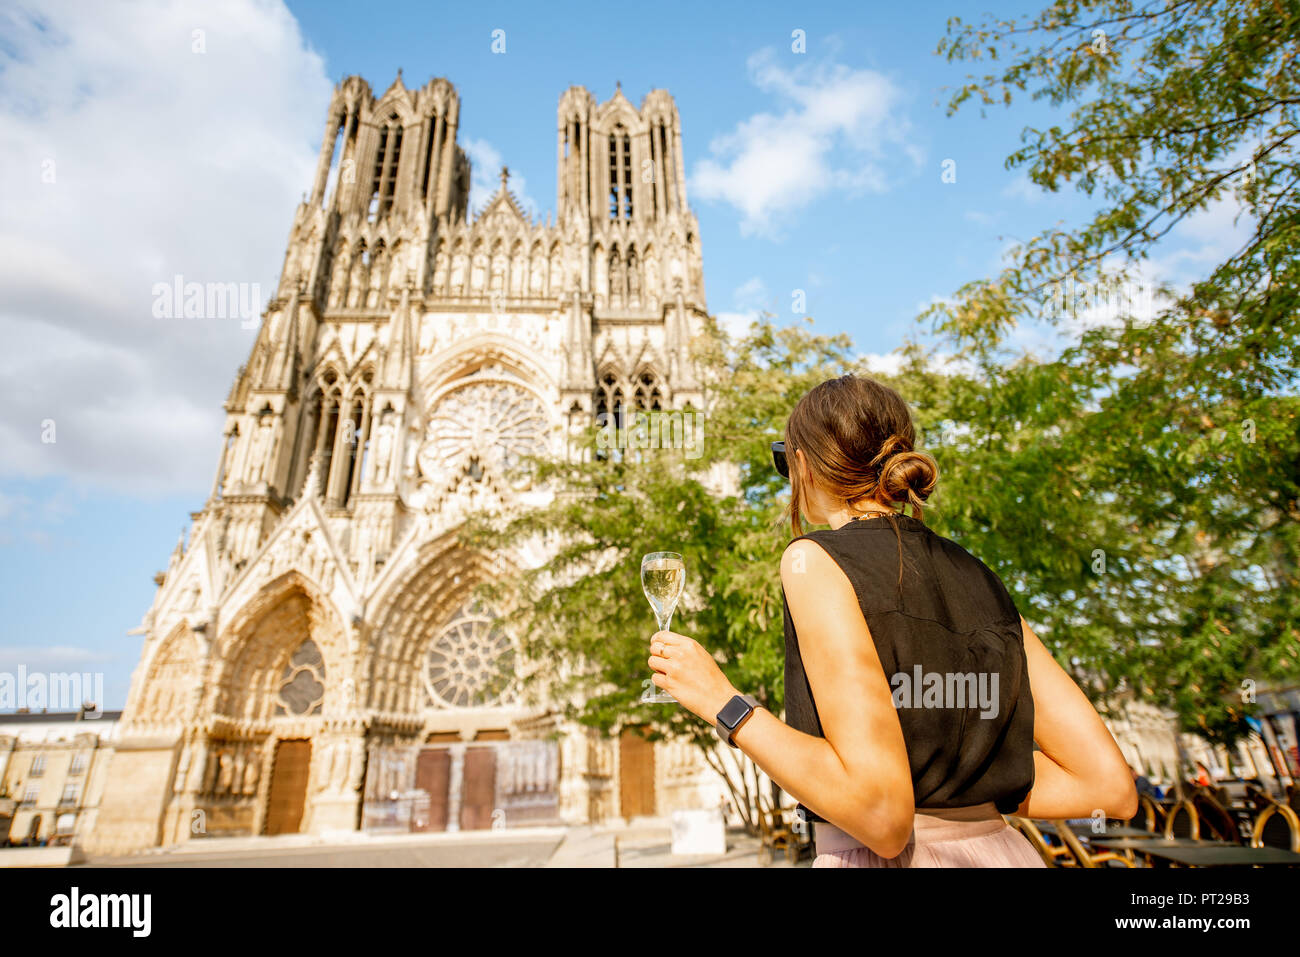 Young woman enjoying champagne debout devant la cathédrale de Reims, ville capitale de la région des vins de Champagne, France Banque D'Images